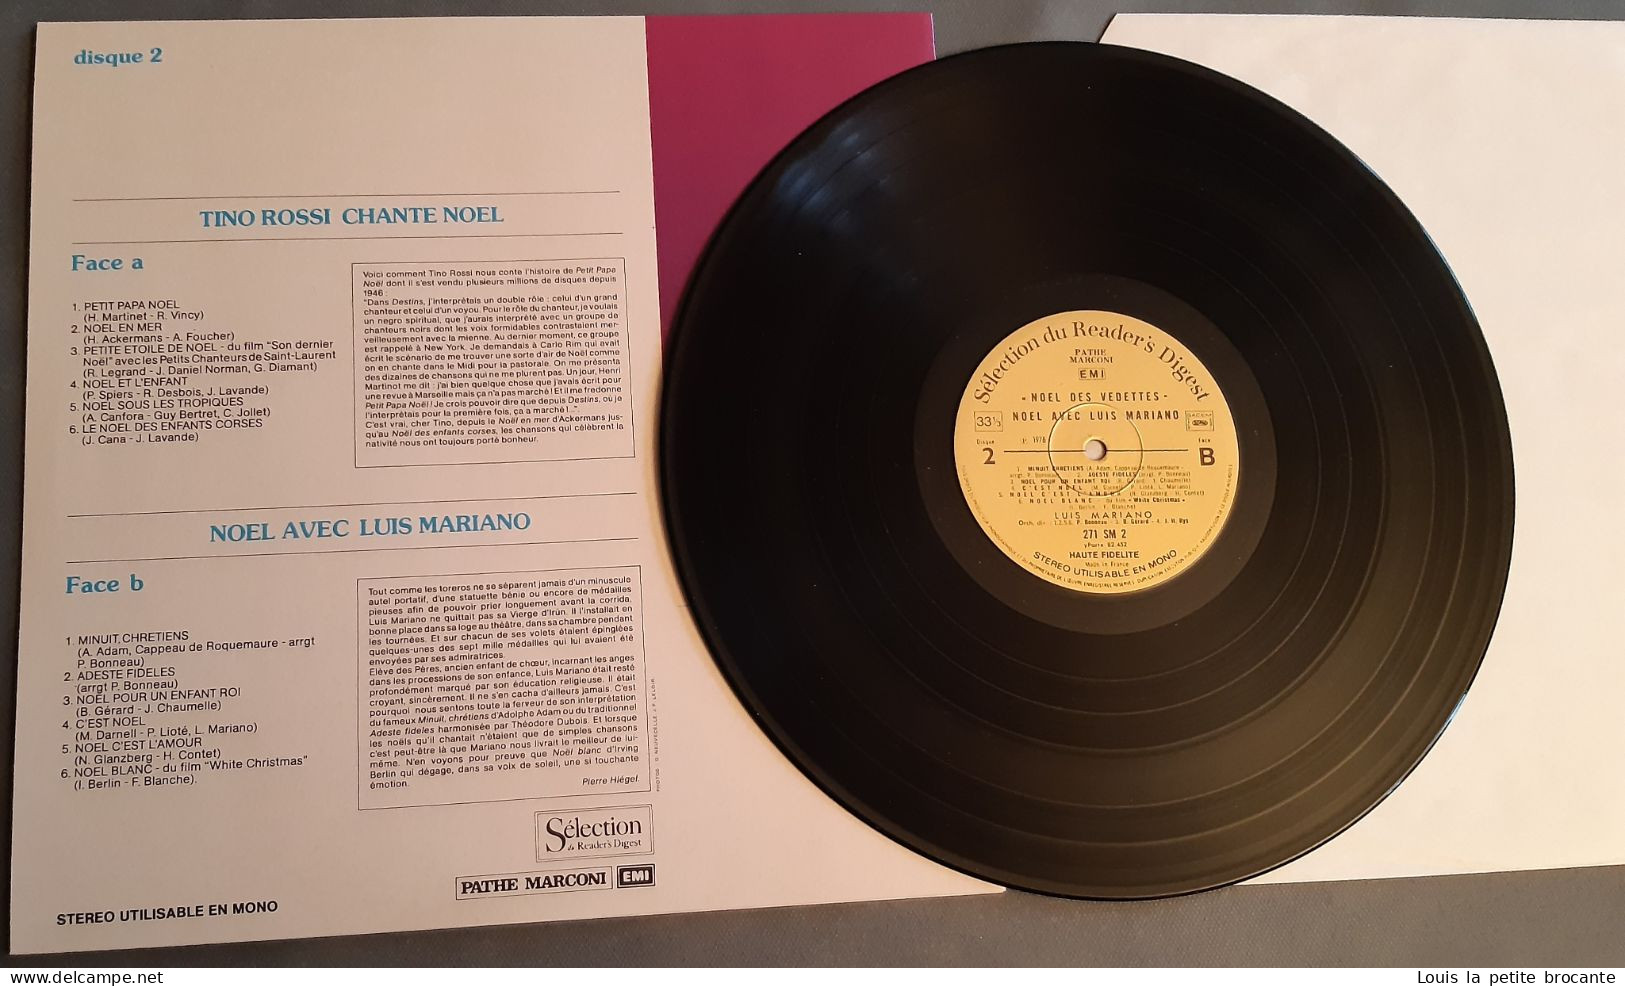 Coffret de 4 disques vinyles "Noël des Vedettes", 33 tours stéréo. PATHE MARCONI, EMI, Sélection du Reader's Digest 1974